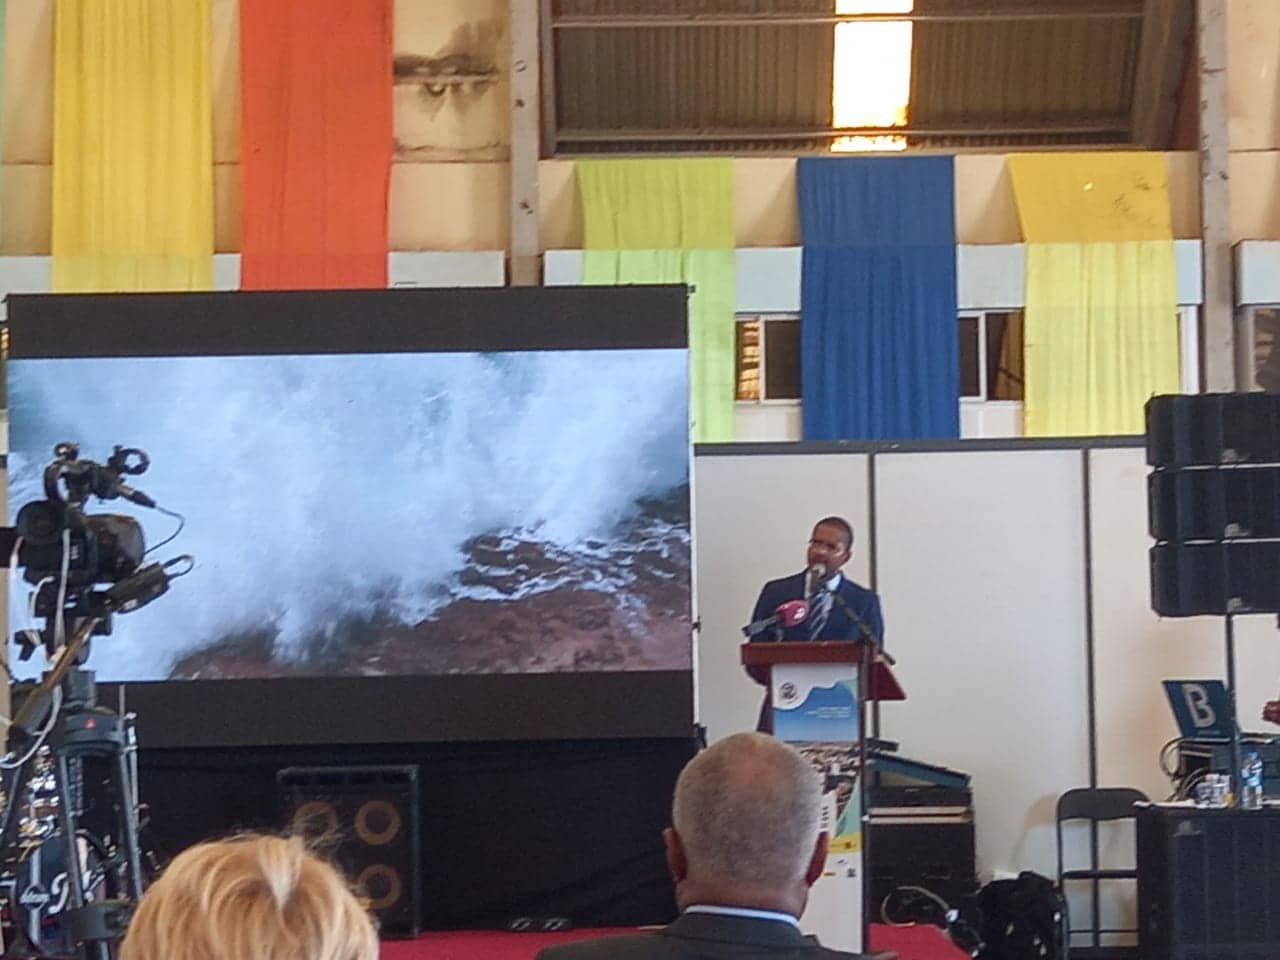 Presidente Miguel Rosa discursa na Feira Checa em Cabo Verde